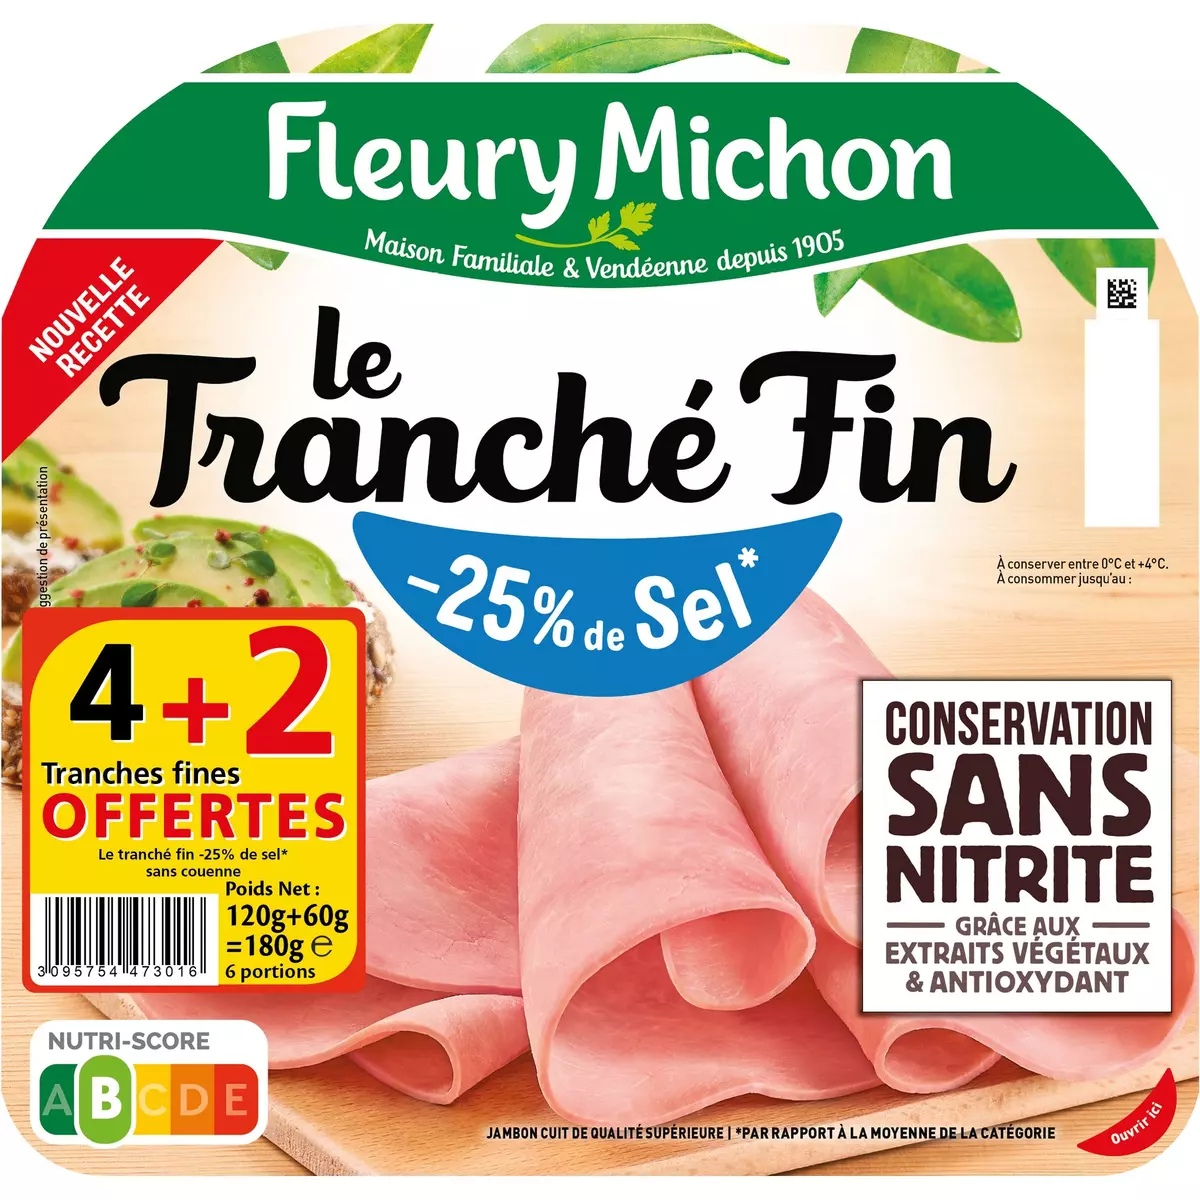 FLEURY MICHON Jambon tranché fin réduit en sel sans nitrite 4 tranches + 2 offertes 180g